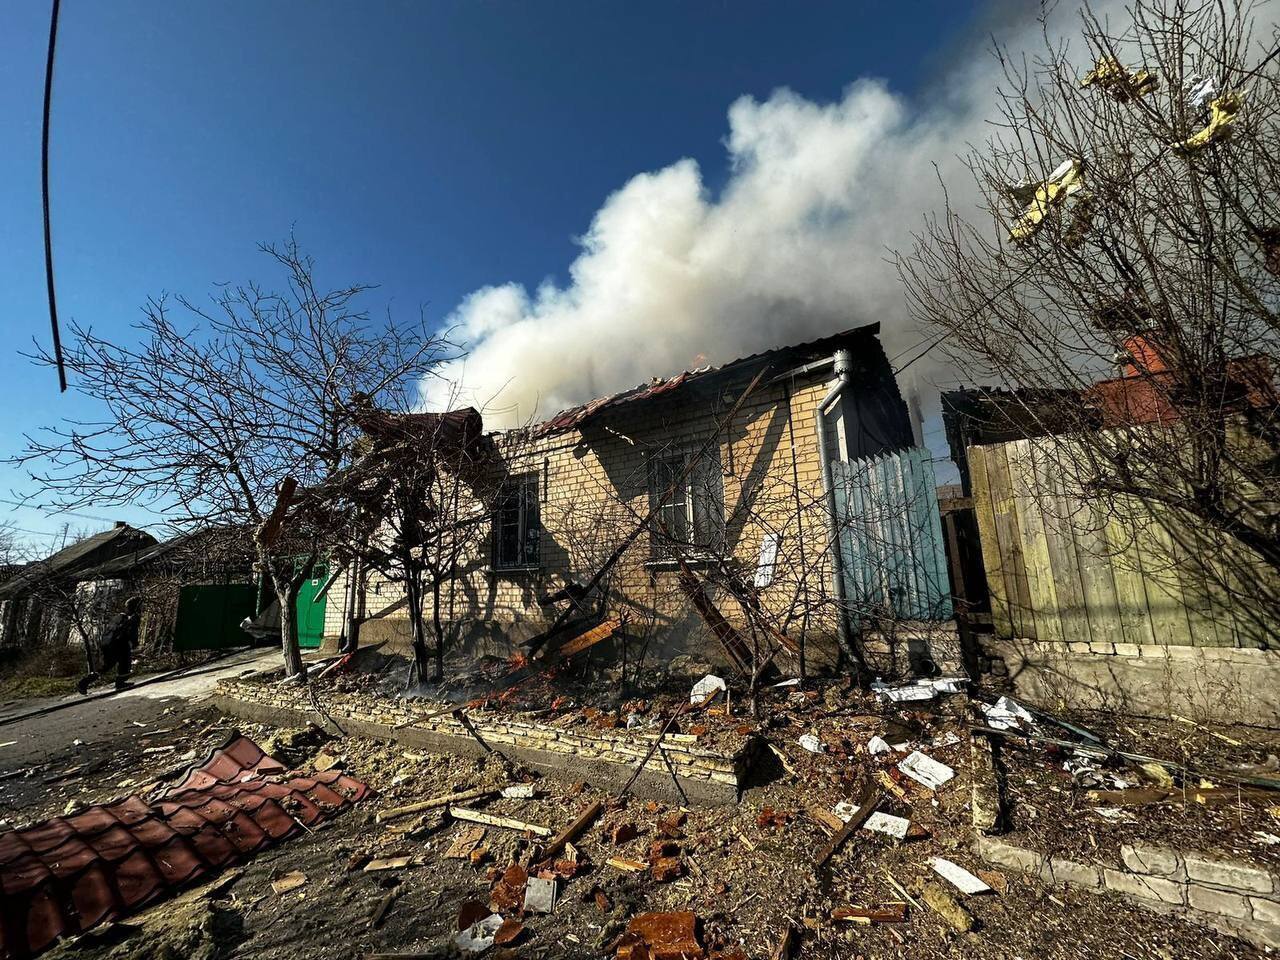 "Удар возмездия": у Шойгу цинично высказались о ракетной атаке на Украину, вследствие которой погибли мирные жители